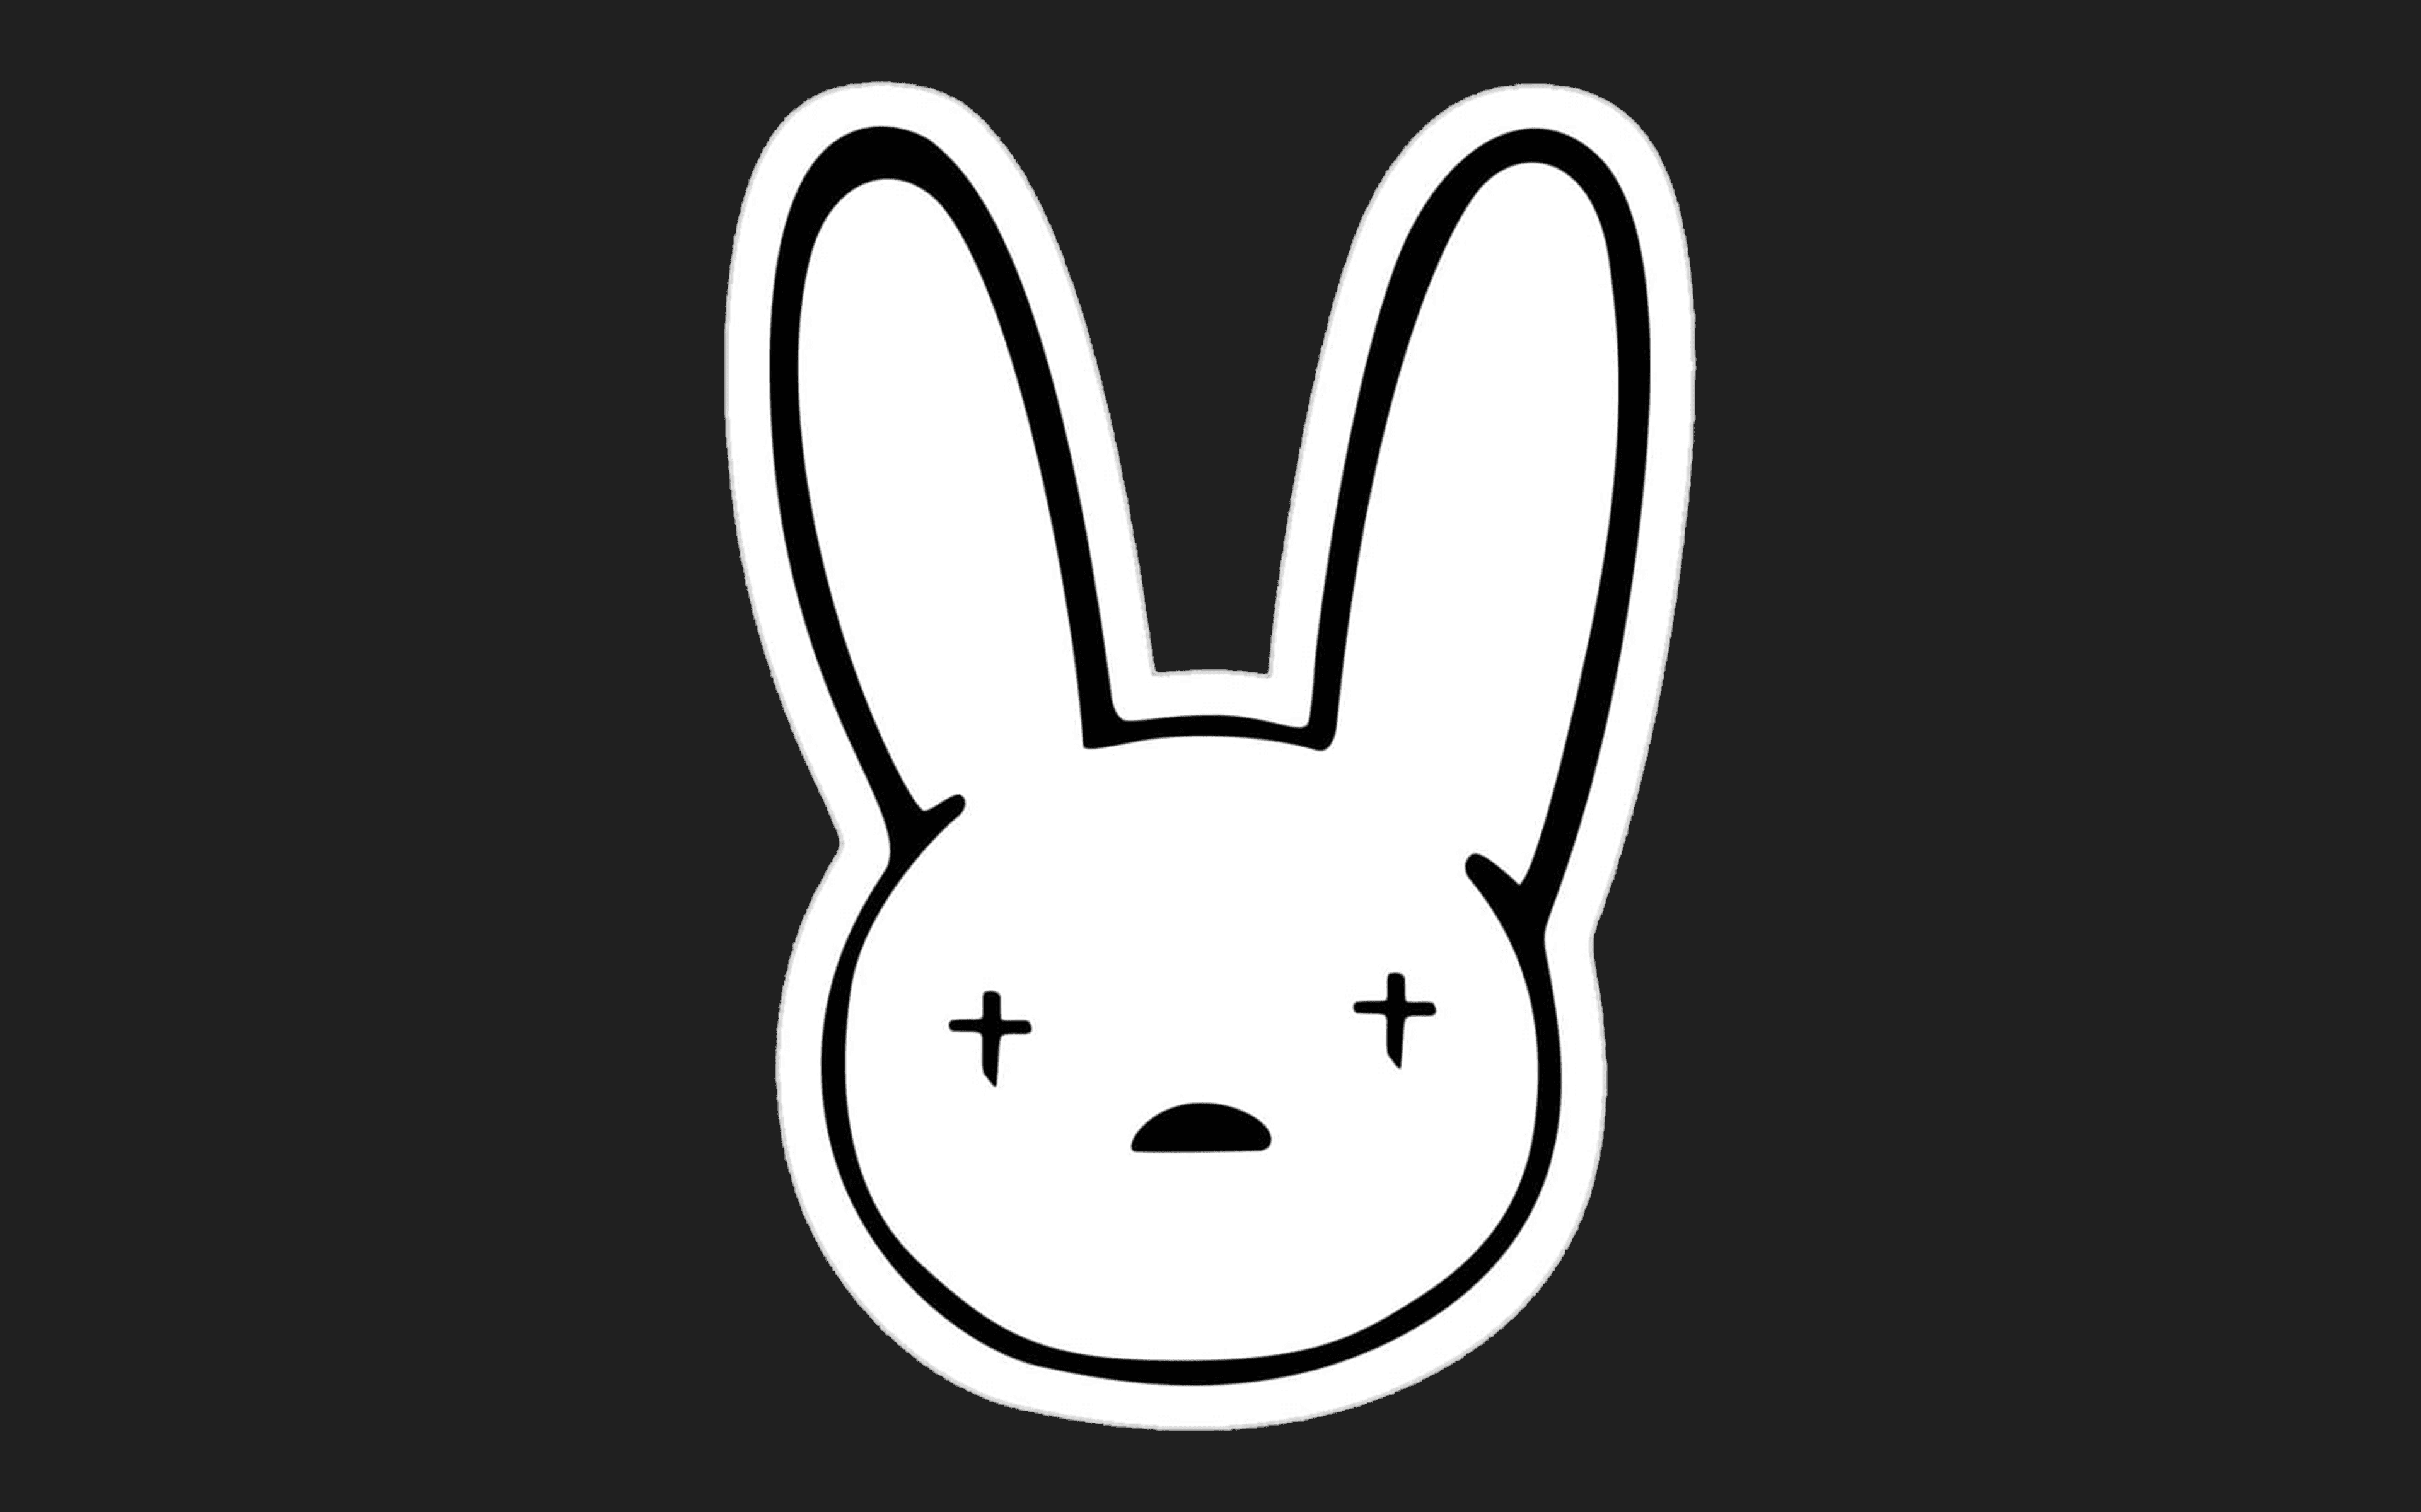   Bad Bunny  YHLQMDLG  YHLQMDLG BadBunny   Bad Bunny  YHLQMDLG  httpswwwyoutubecomwatchvfSlqTX39CMM  By Explosion Trap  Facebook